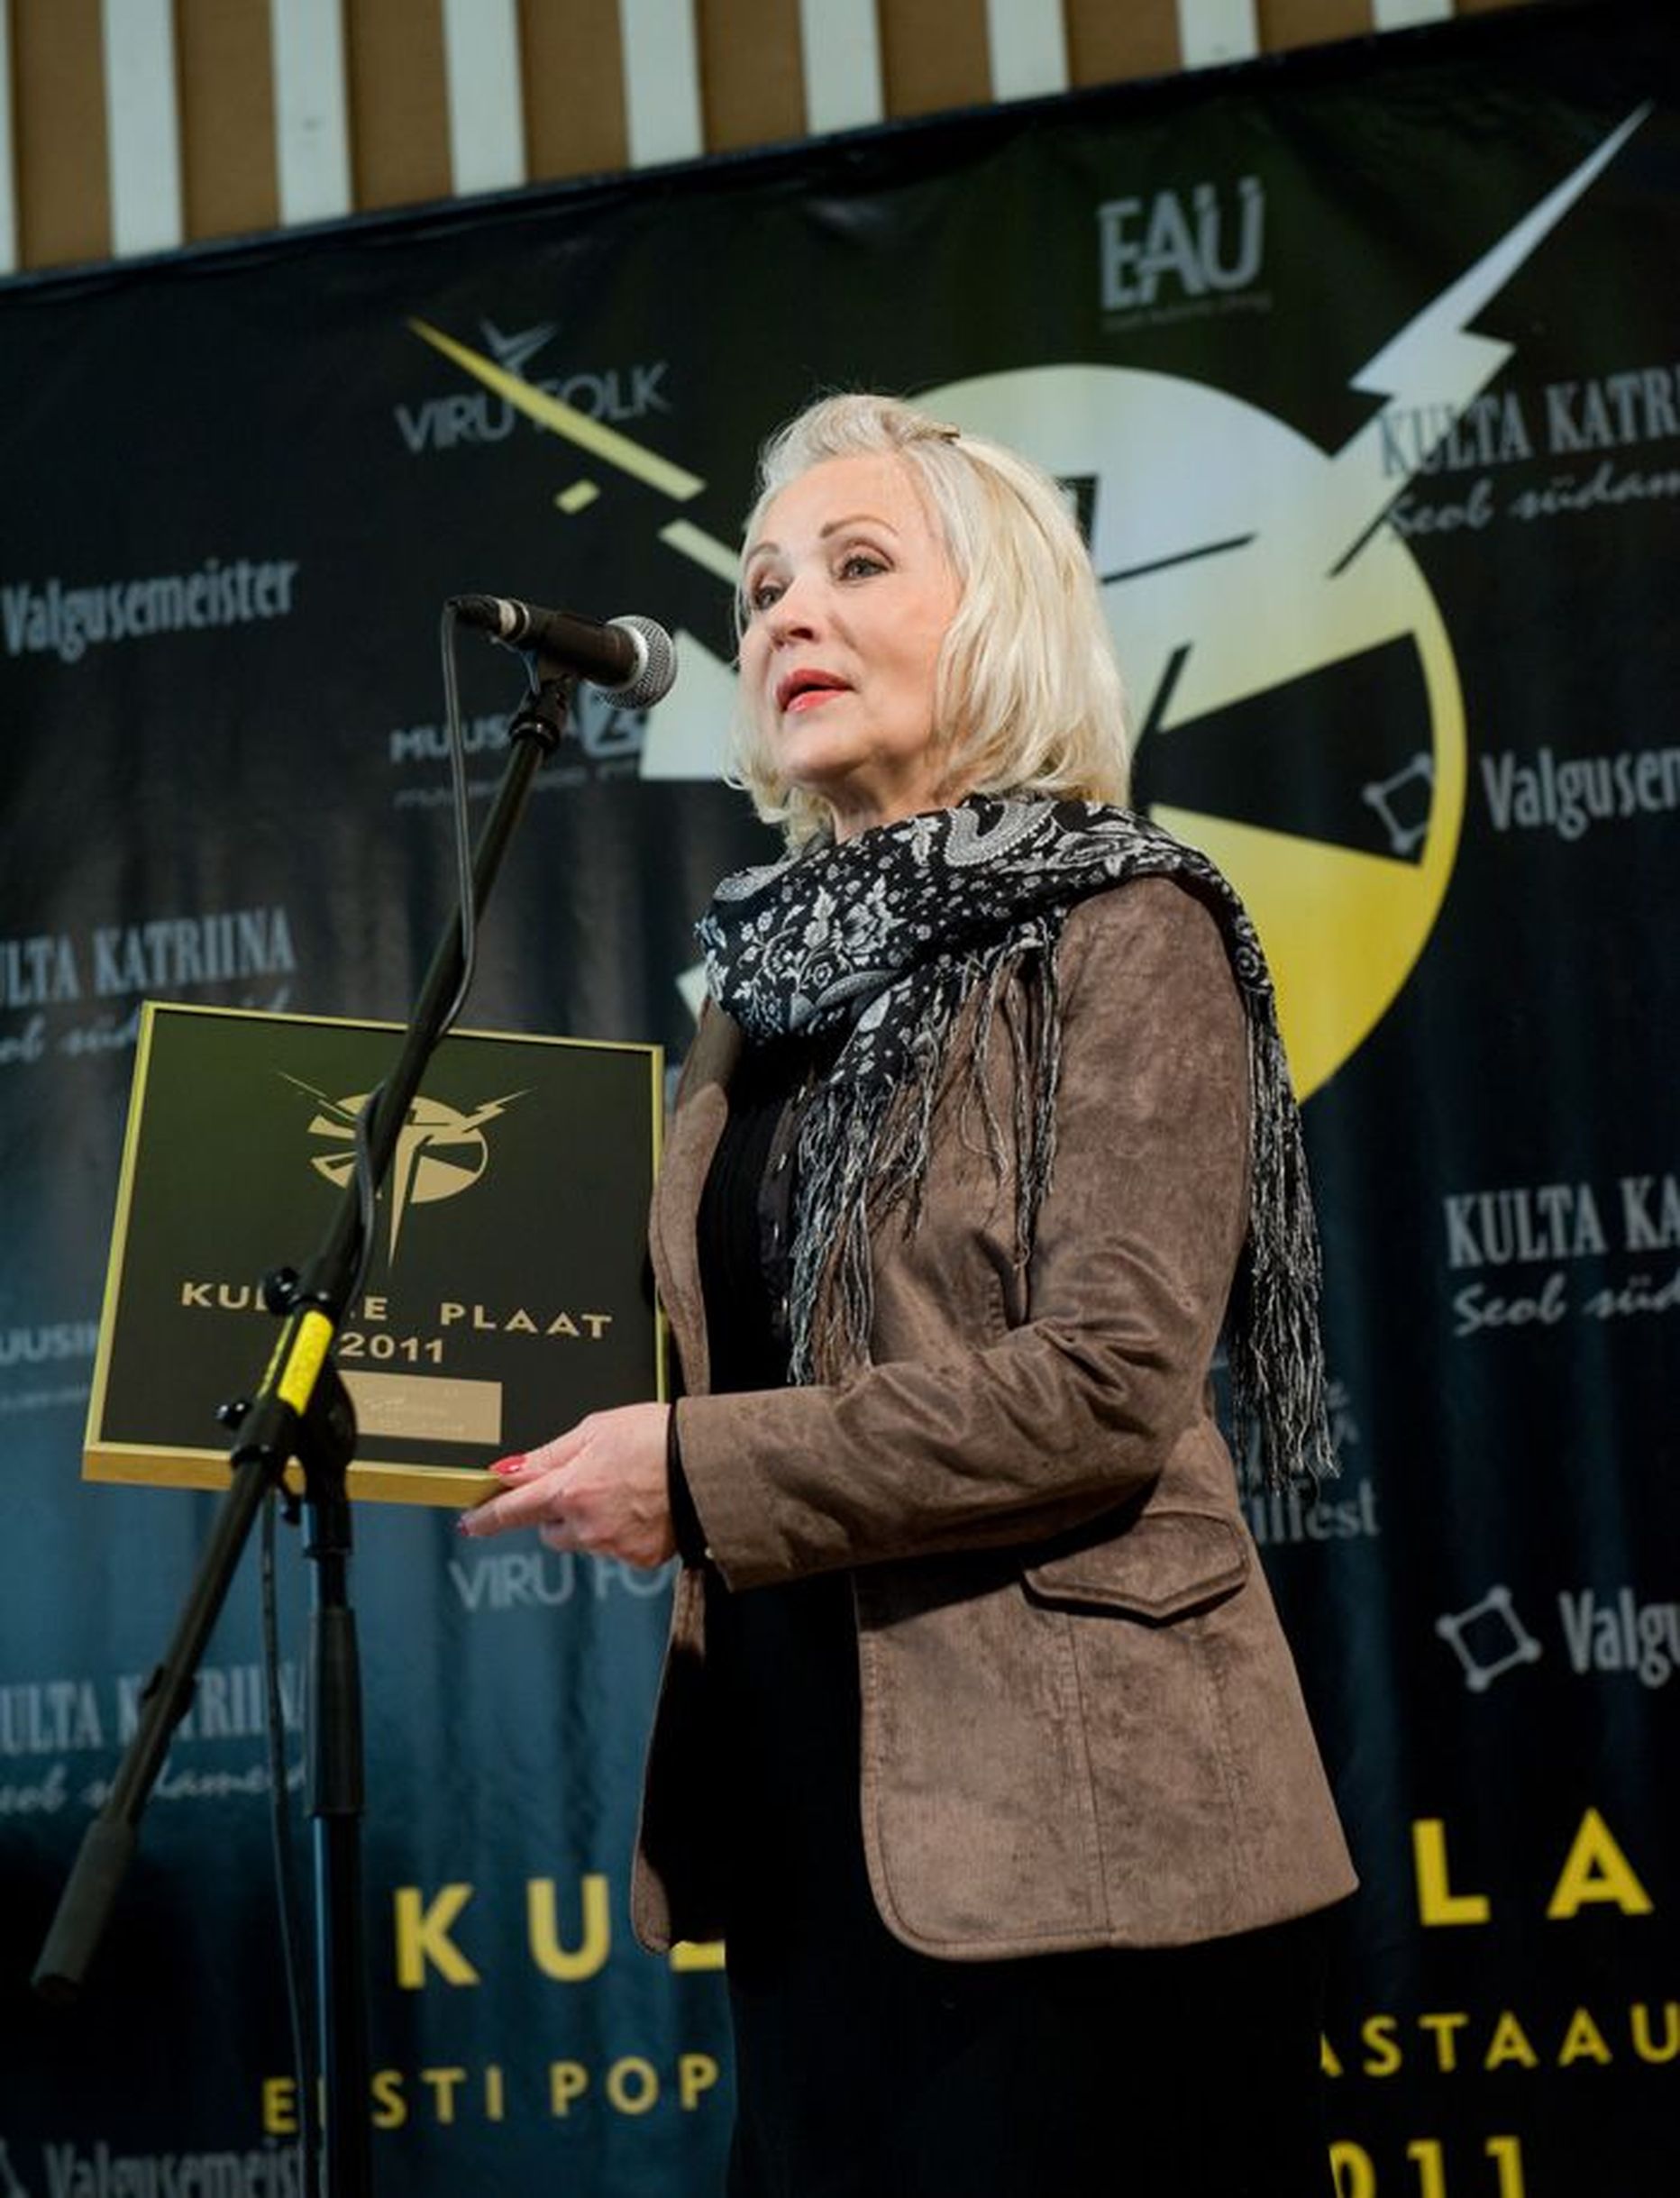 Els Himma sai Kuldse Plaadi hinnatava panuse eest eesti popmuusikasse.